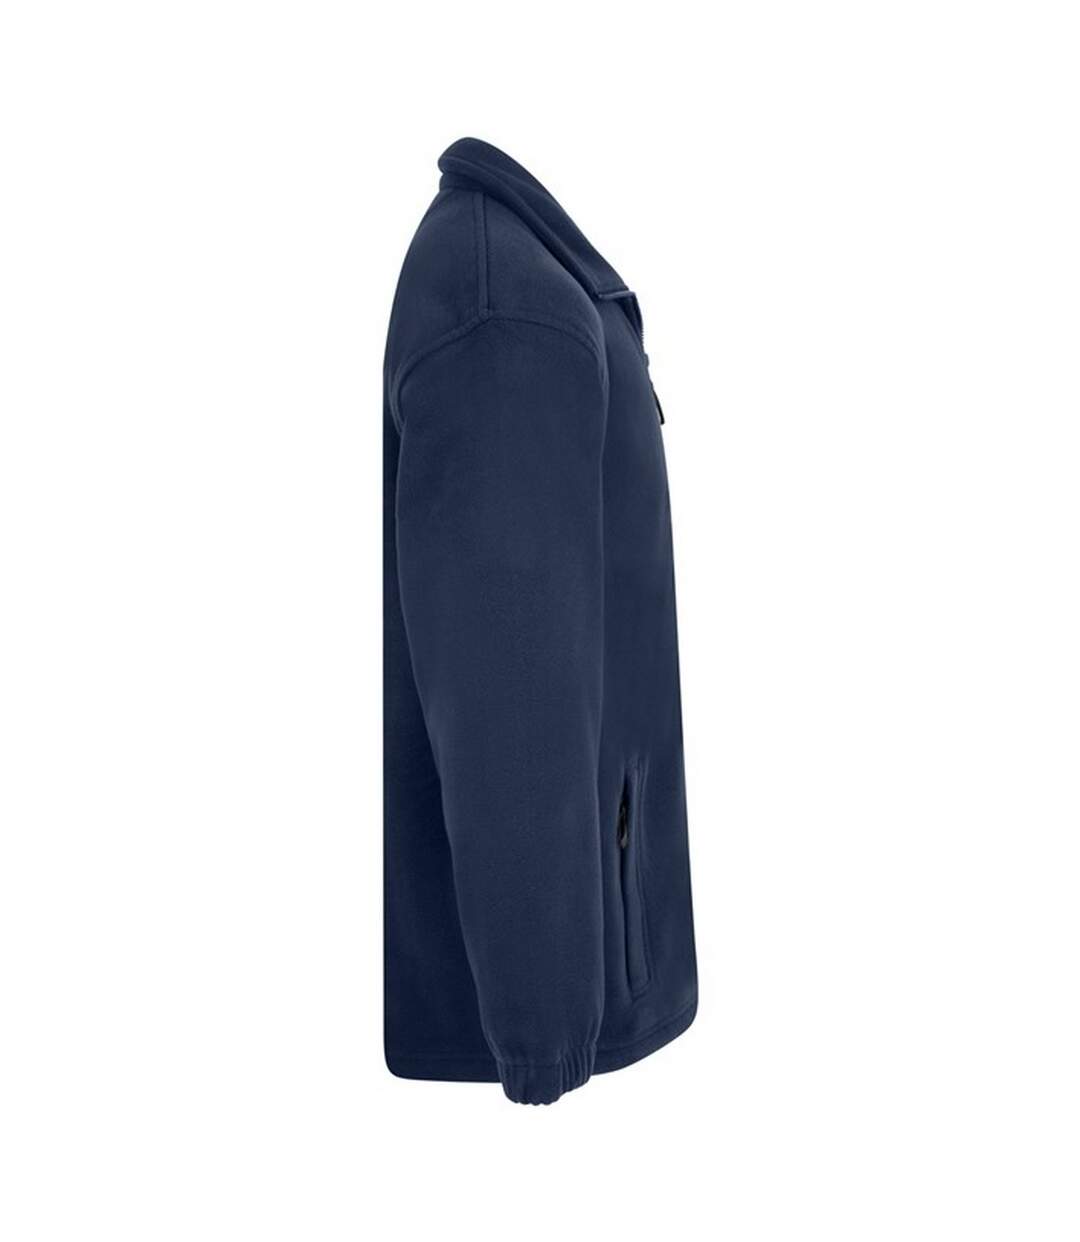 Absolute Apparel Heritage Full Zip Fleece (Navy) - UTAB128